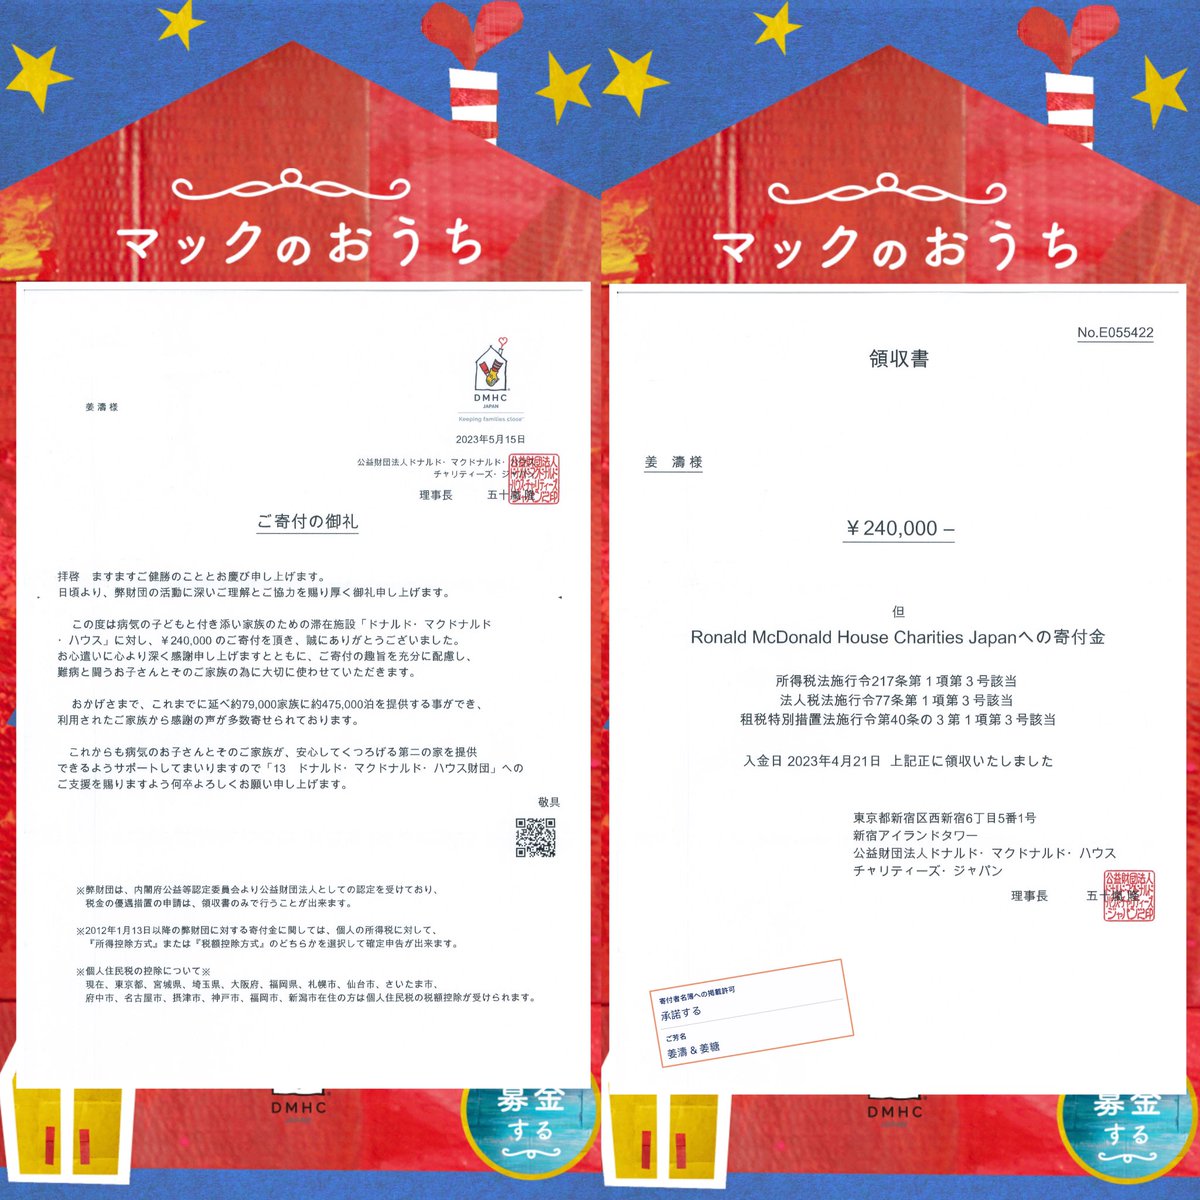 姜濤香港ファンクラブ、そして世界中の「姜糖」が430海外募金に賛同してくれたおかげで、集まった募金は「姜濤＆姜糖」名義で日本のドナルド・マクドナルド・ハウスに寄付されました。

#姜濤 #KeungTo #ギョン・トウ 
#ドナルドマクドナルドハウス #dmhcjapan #DHM 

instagram.com/p/CsbN92sPXsw/…